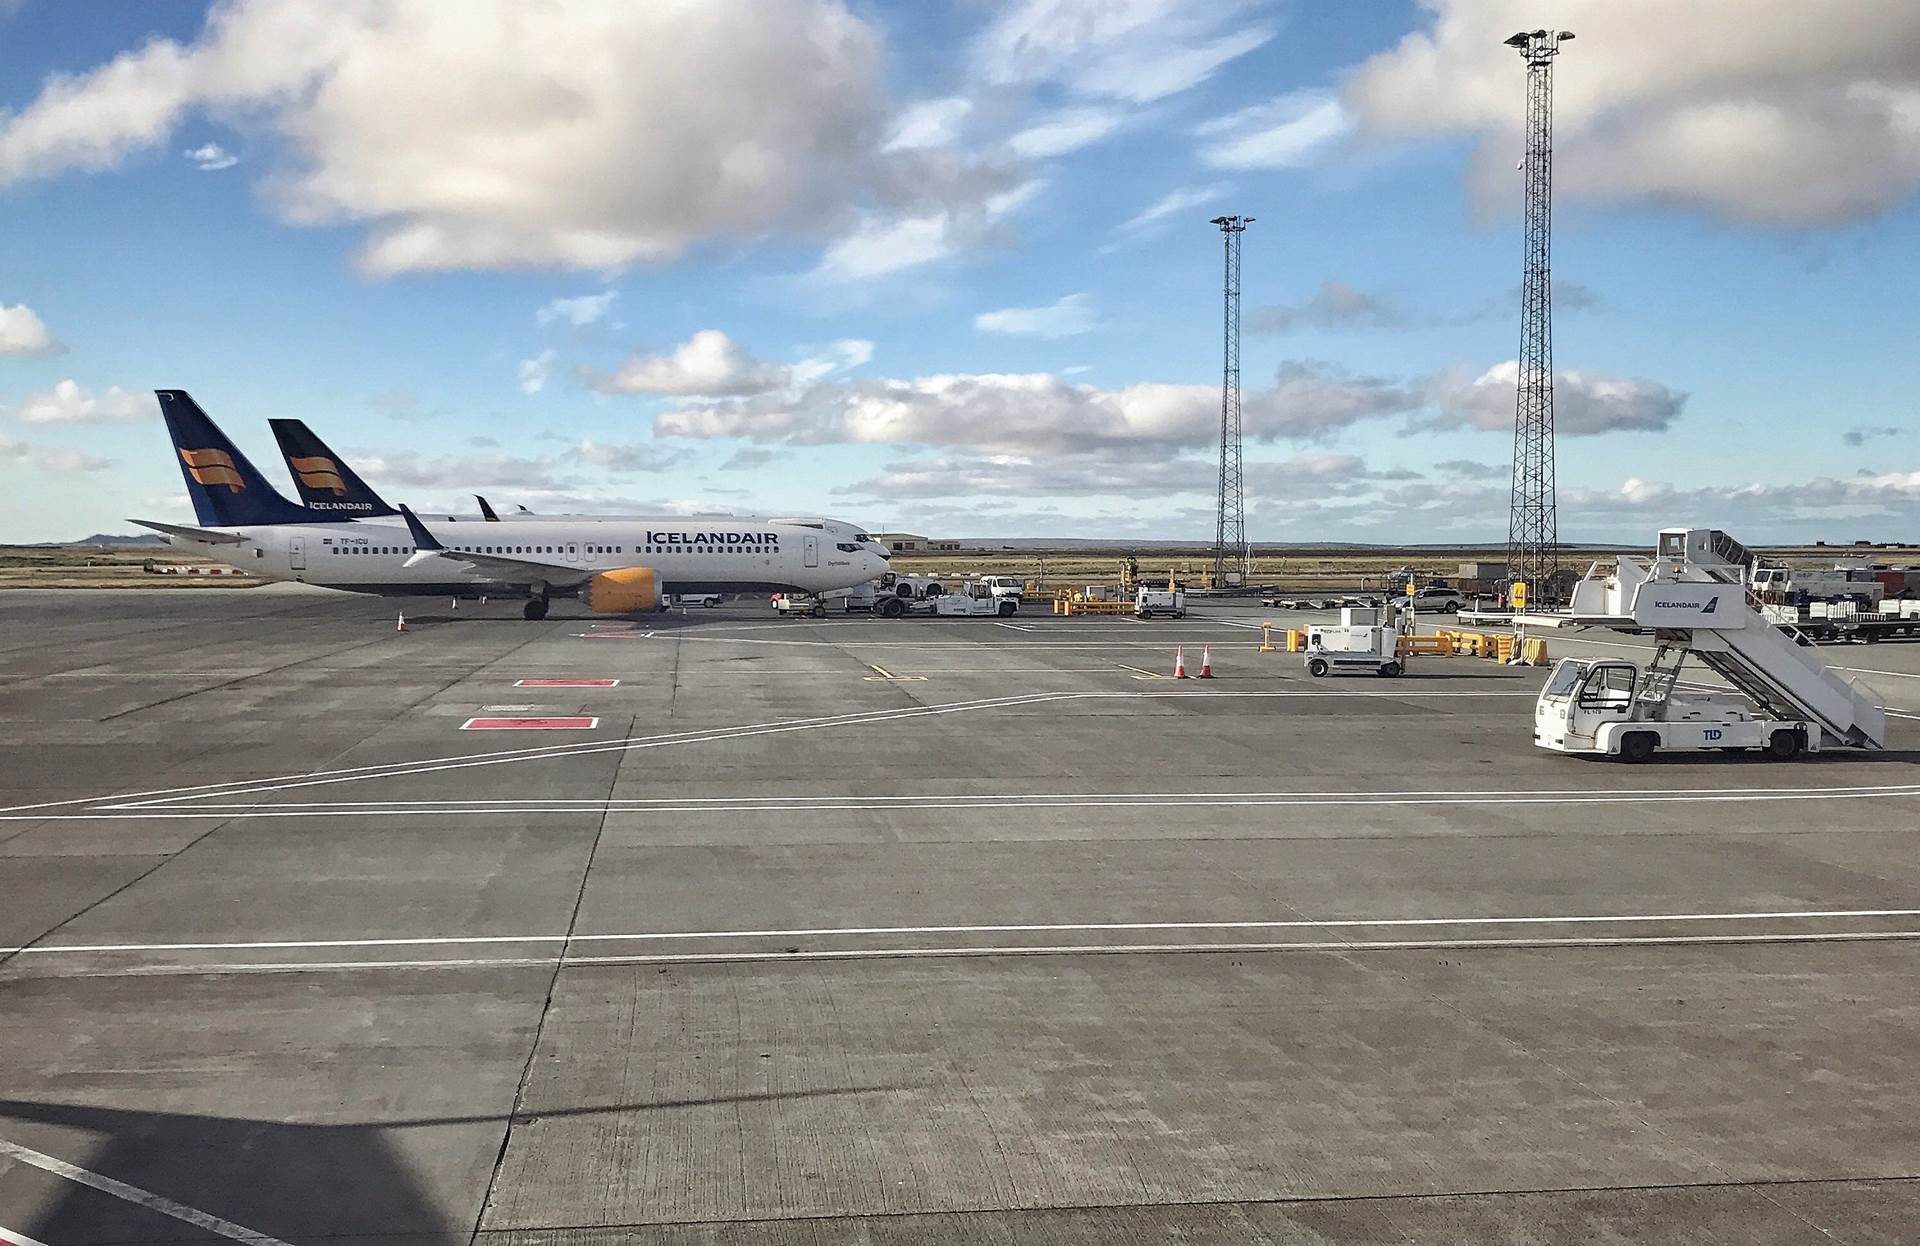 Lágmarks millilandaflug tryggt í sumar með nýjum samningi við Icelandair